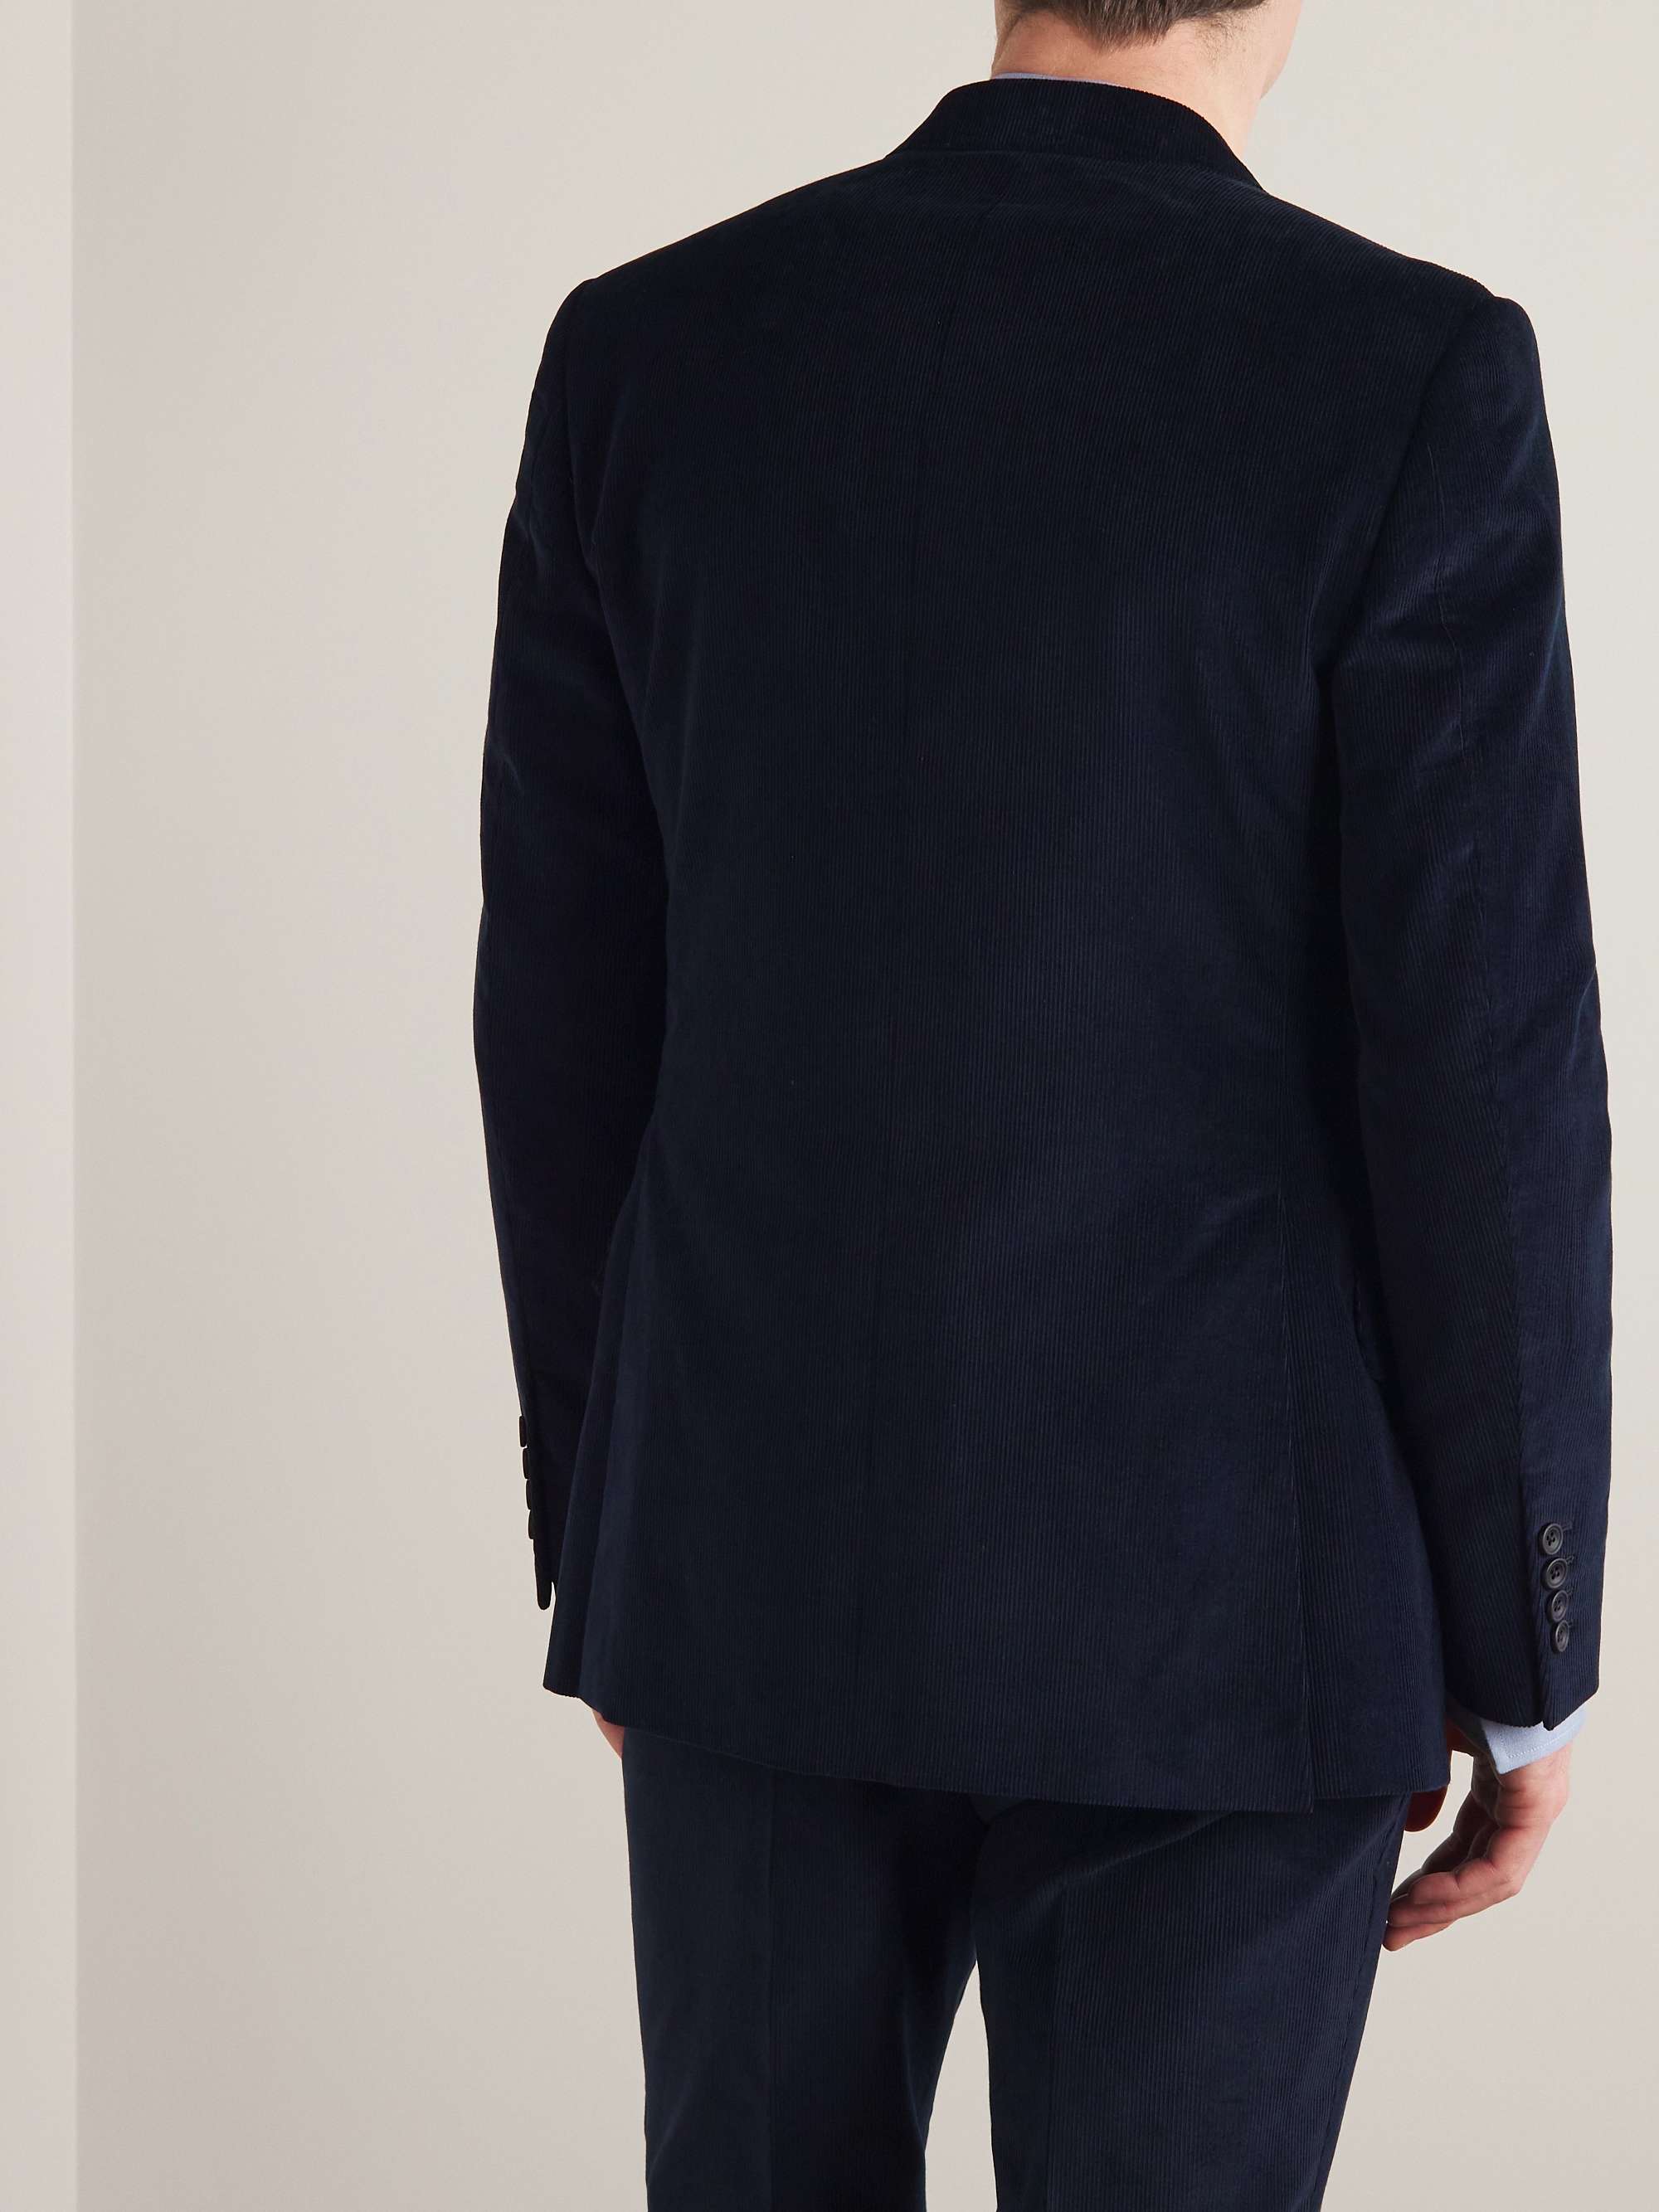 KINGSMAN Slim-Fit Cotton and Cashmere-Blend Corduroy Suit Jacket